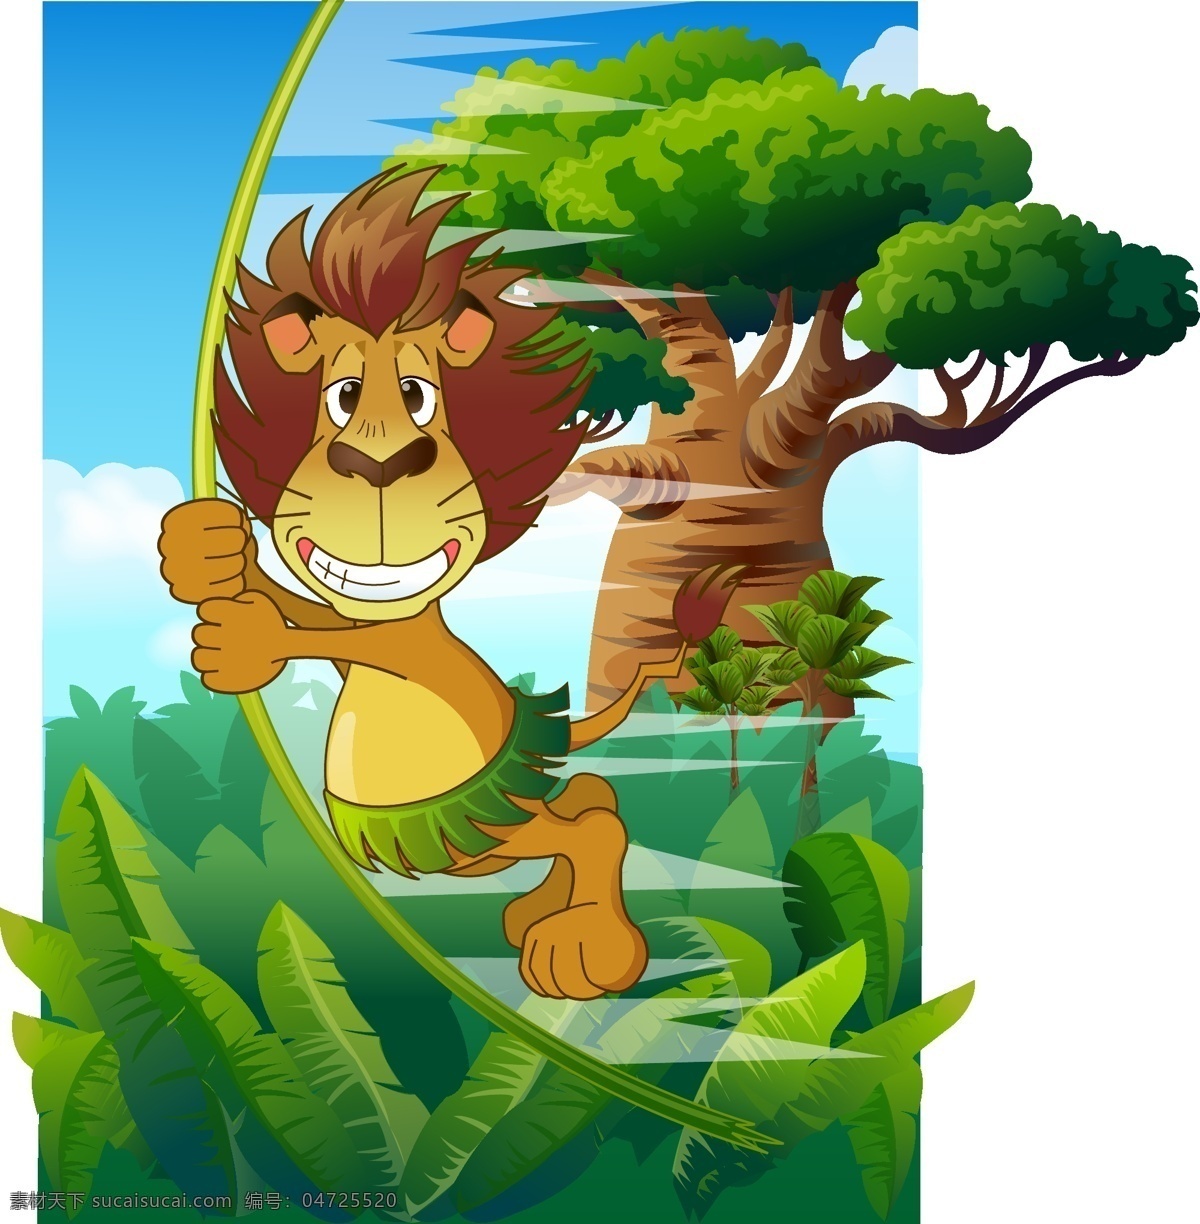 狮子荡秋千 矢量动物 矢量狮子 动物狮子 插画狮子 插画树木 手绘植物 手绘森林 可爱动物 可爱狮子 卡通动物 动物 生物世界 野生动物